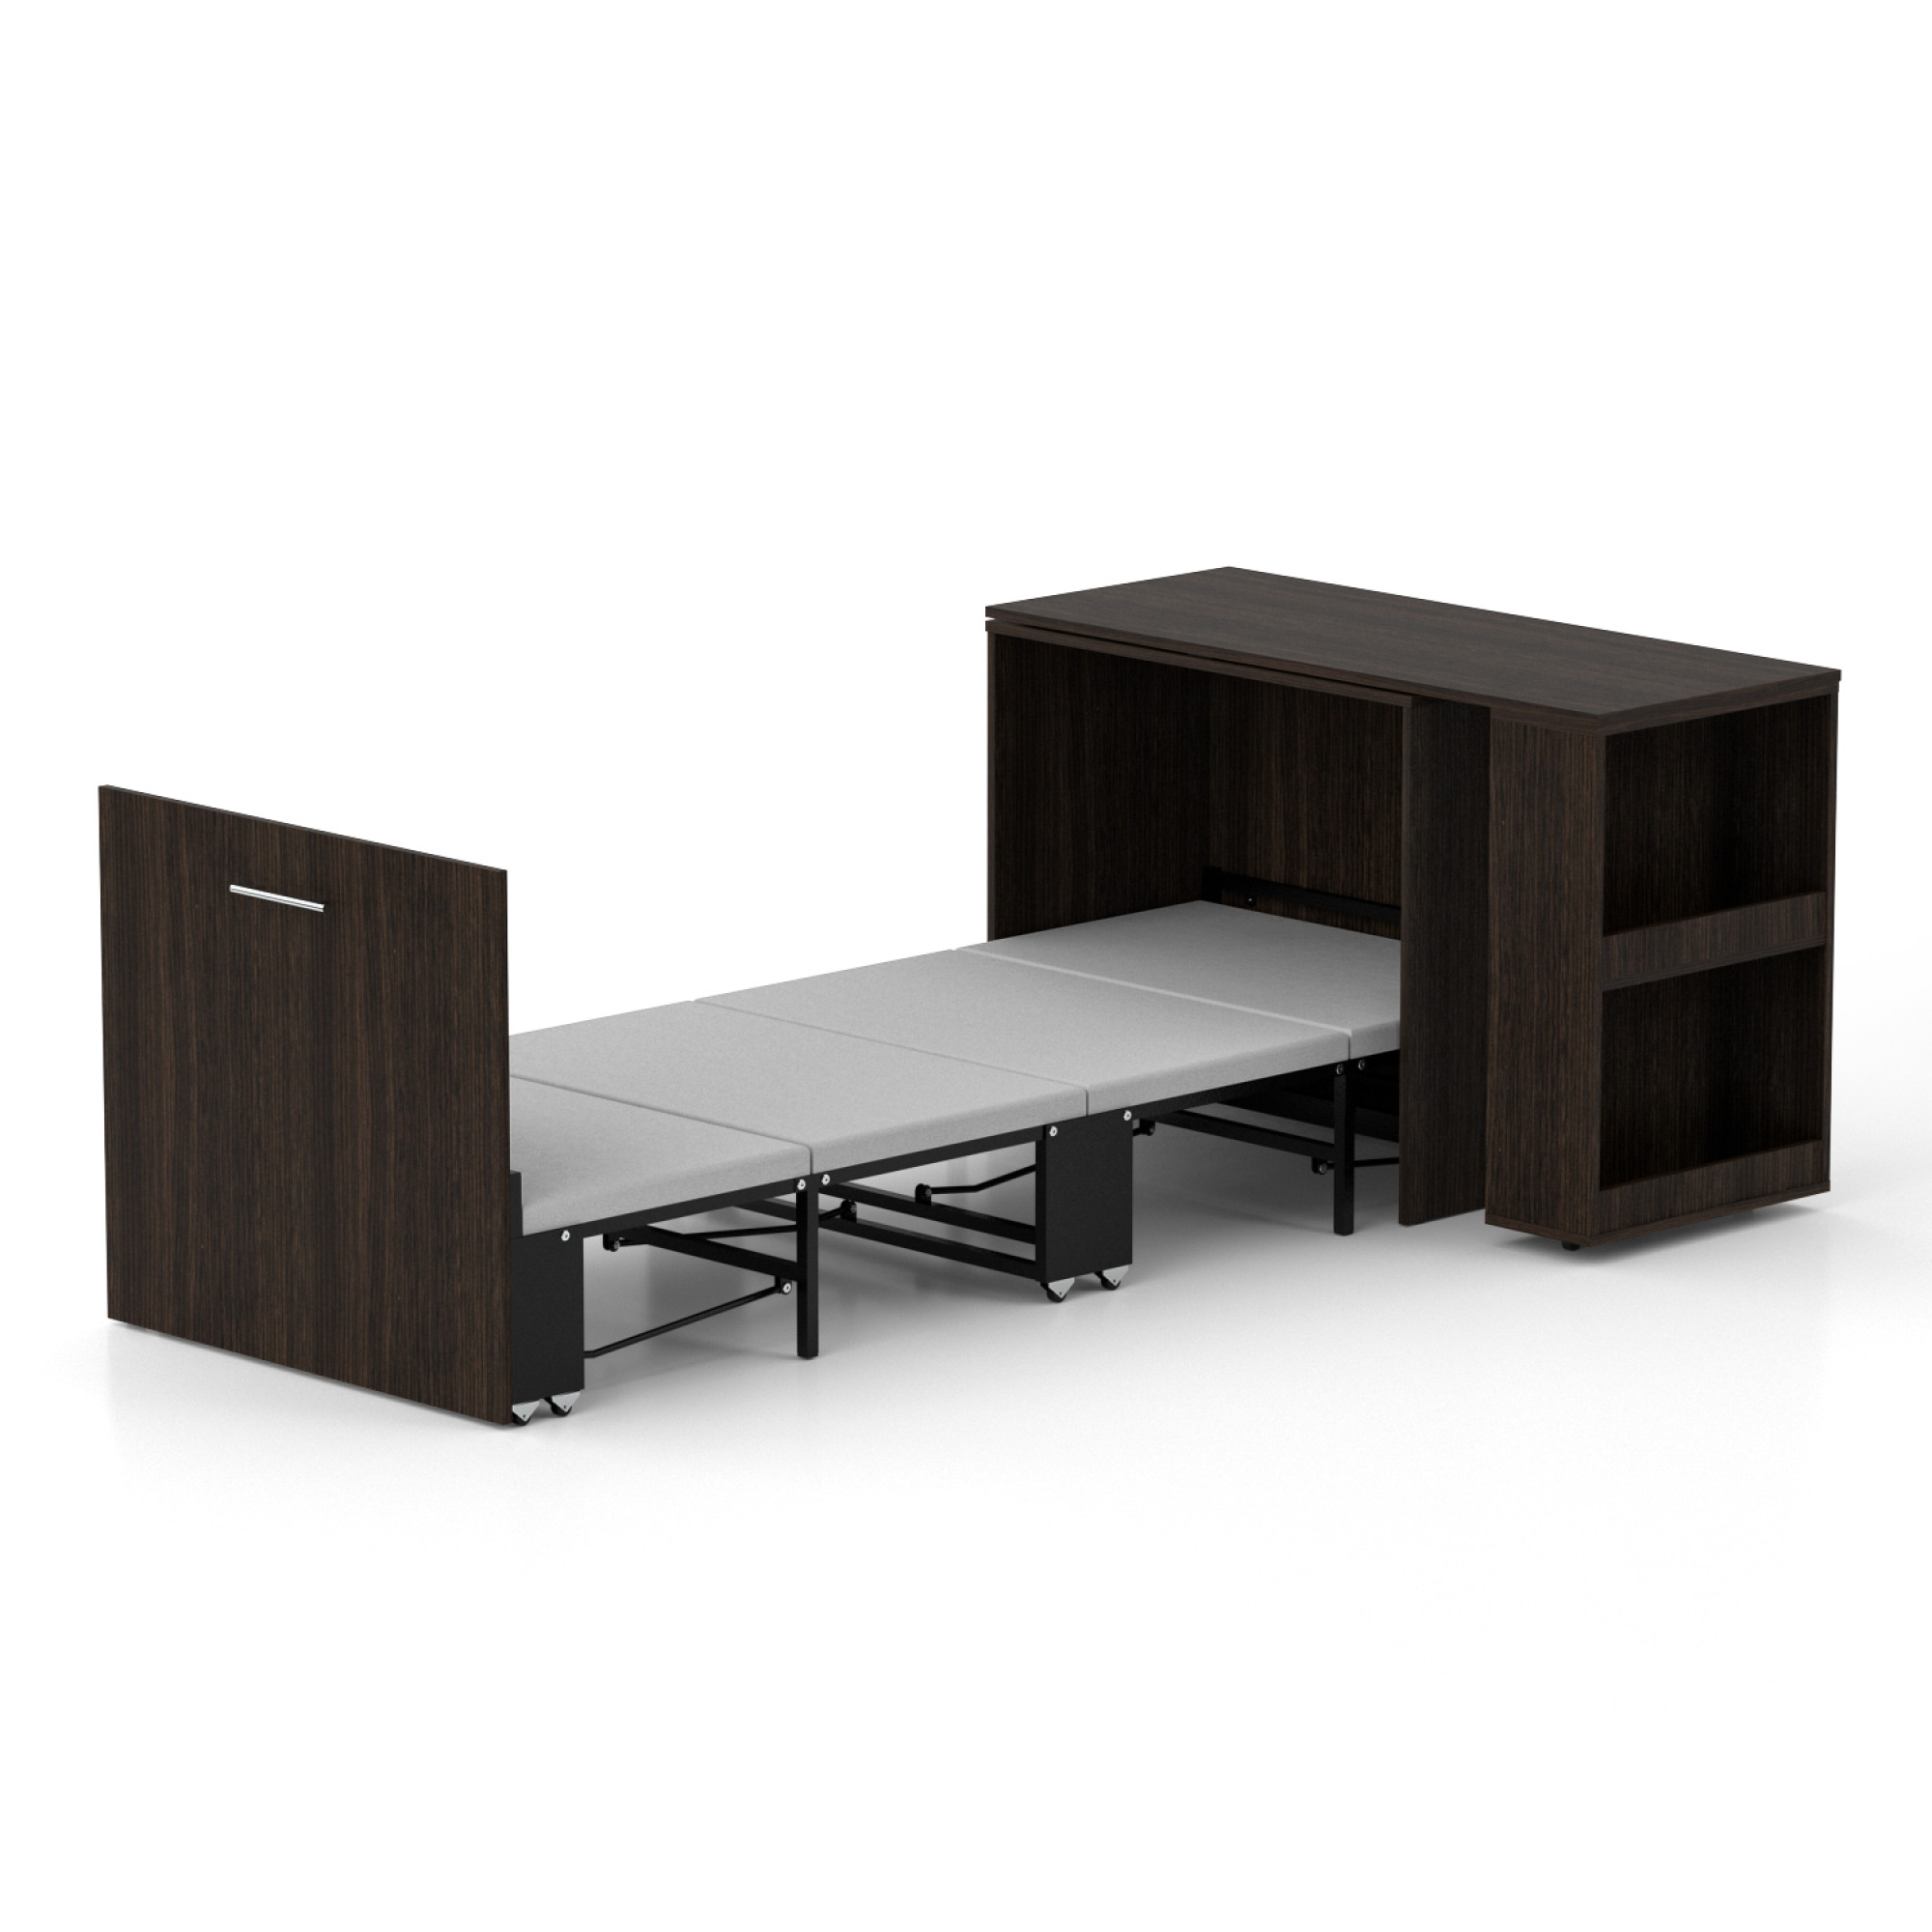 Ліжко-трансформер + Письмовий стіл + Тумба + Комод Sirim-C1 (4 в 1) / (Венге)